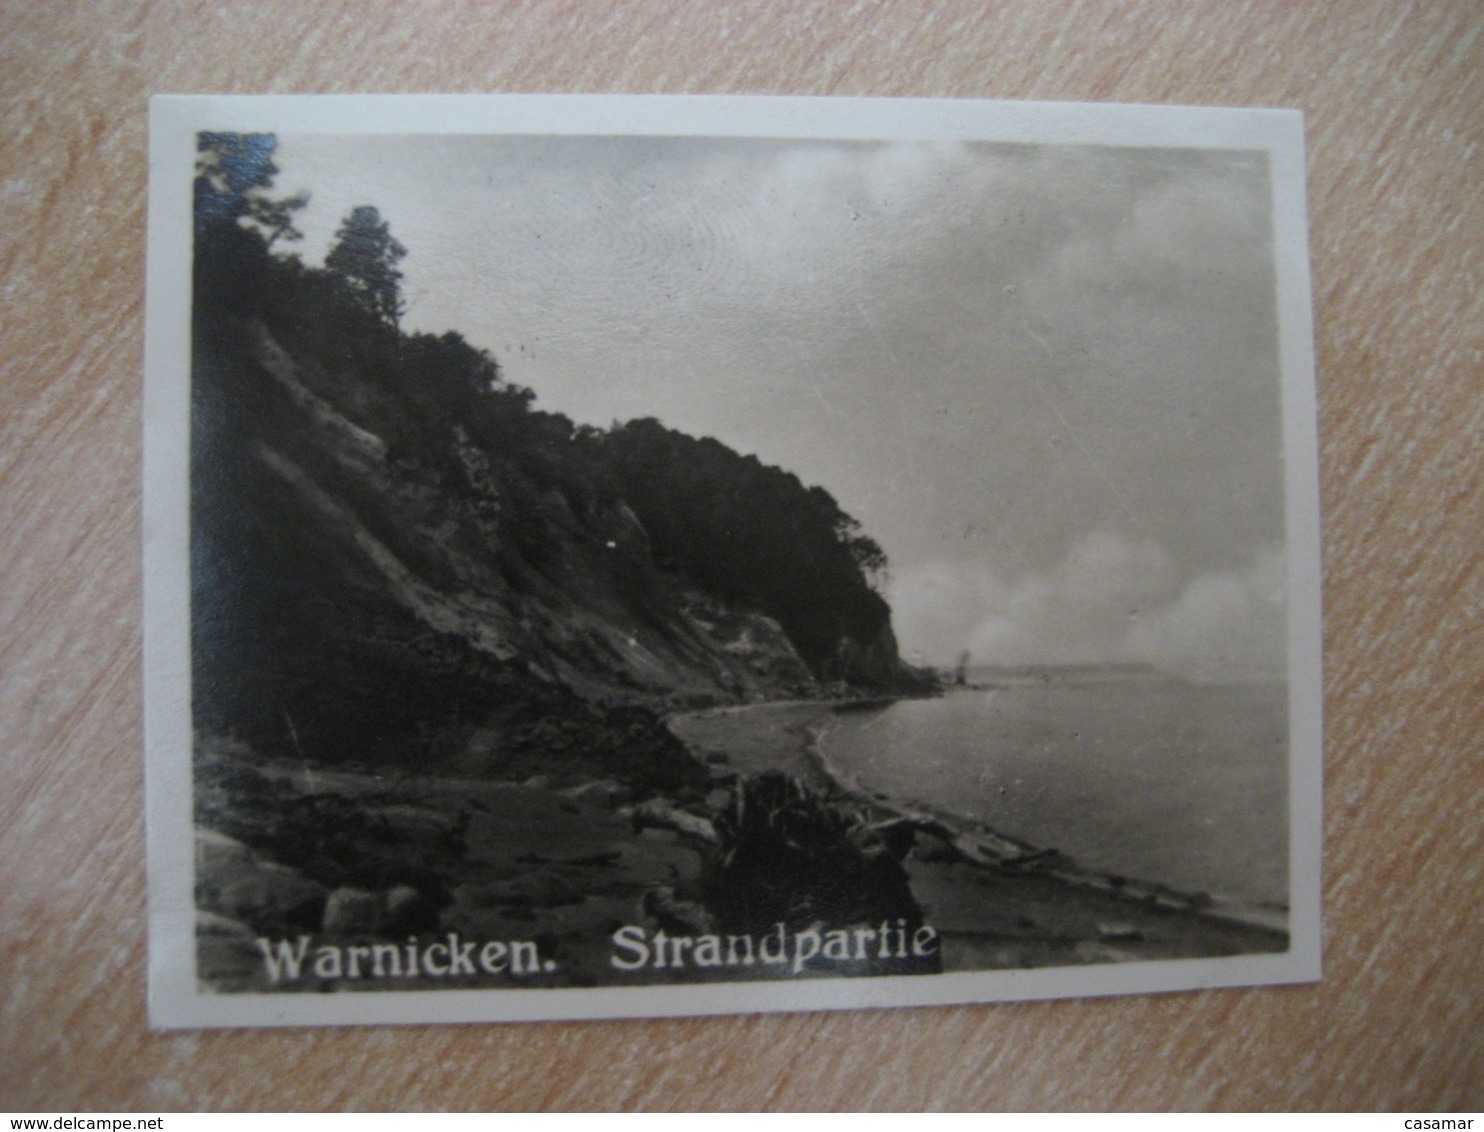 WARNICKEN Strandpartie Bilder Card Photo Photography (4x5,2cm) Ostpreusen East Prussia GERMANY 30s Tobacco - Non Classificati